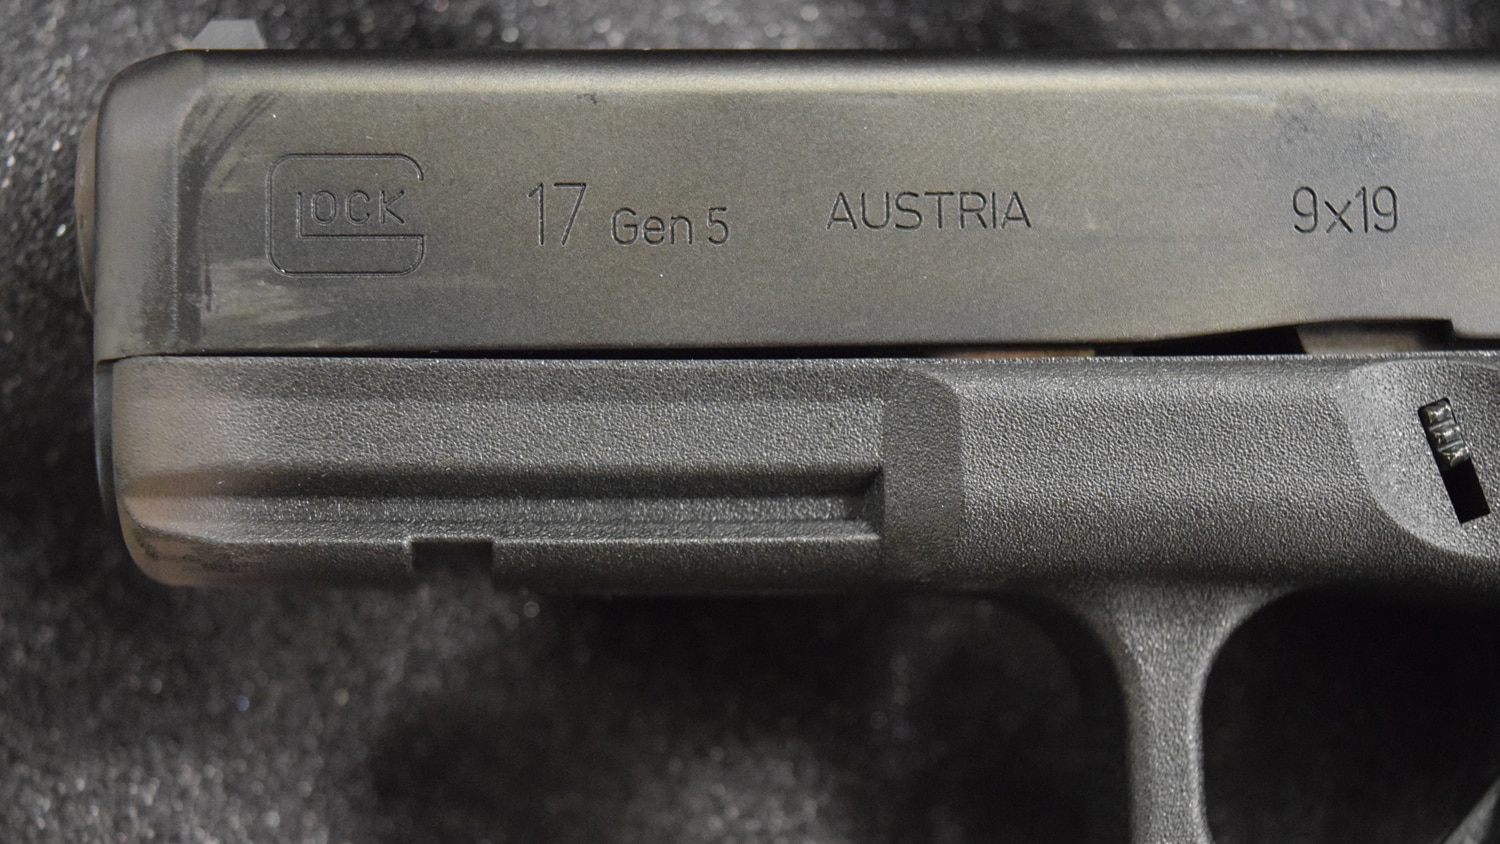 The business end of a Glock 17 Gen 5 pistol. (Photo: Daniel Terrill/Guns.com)